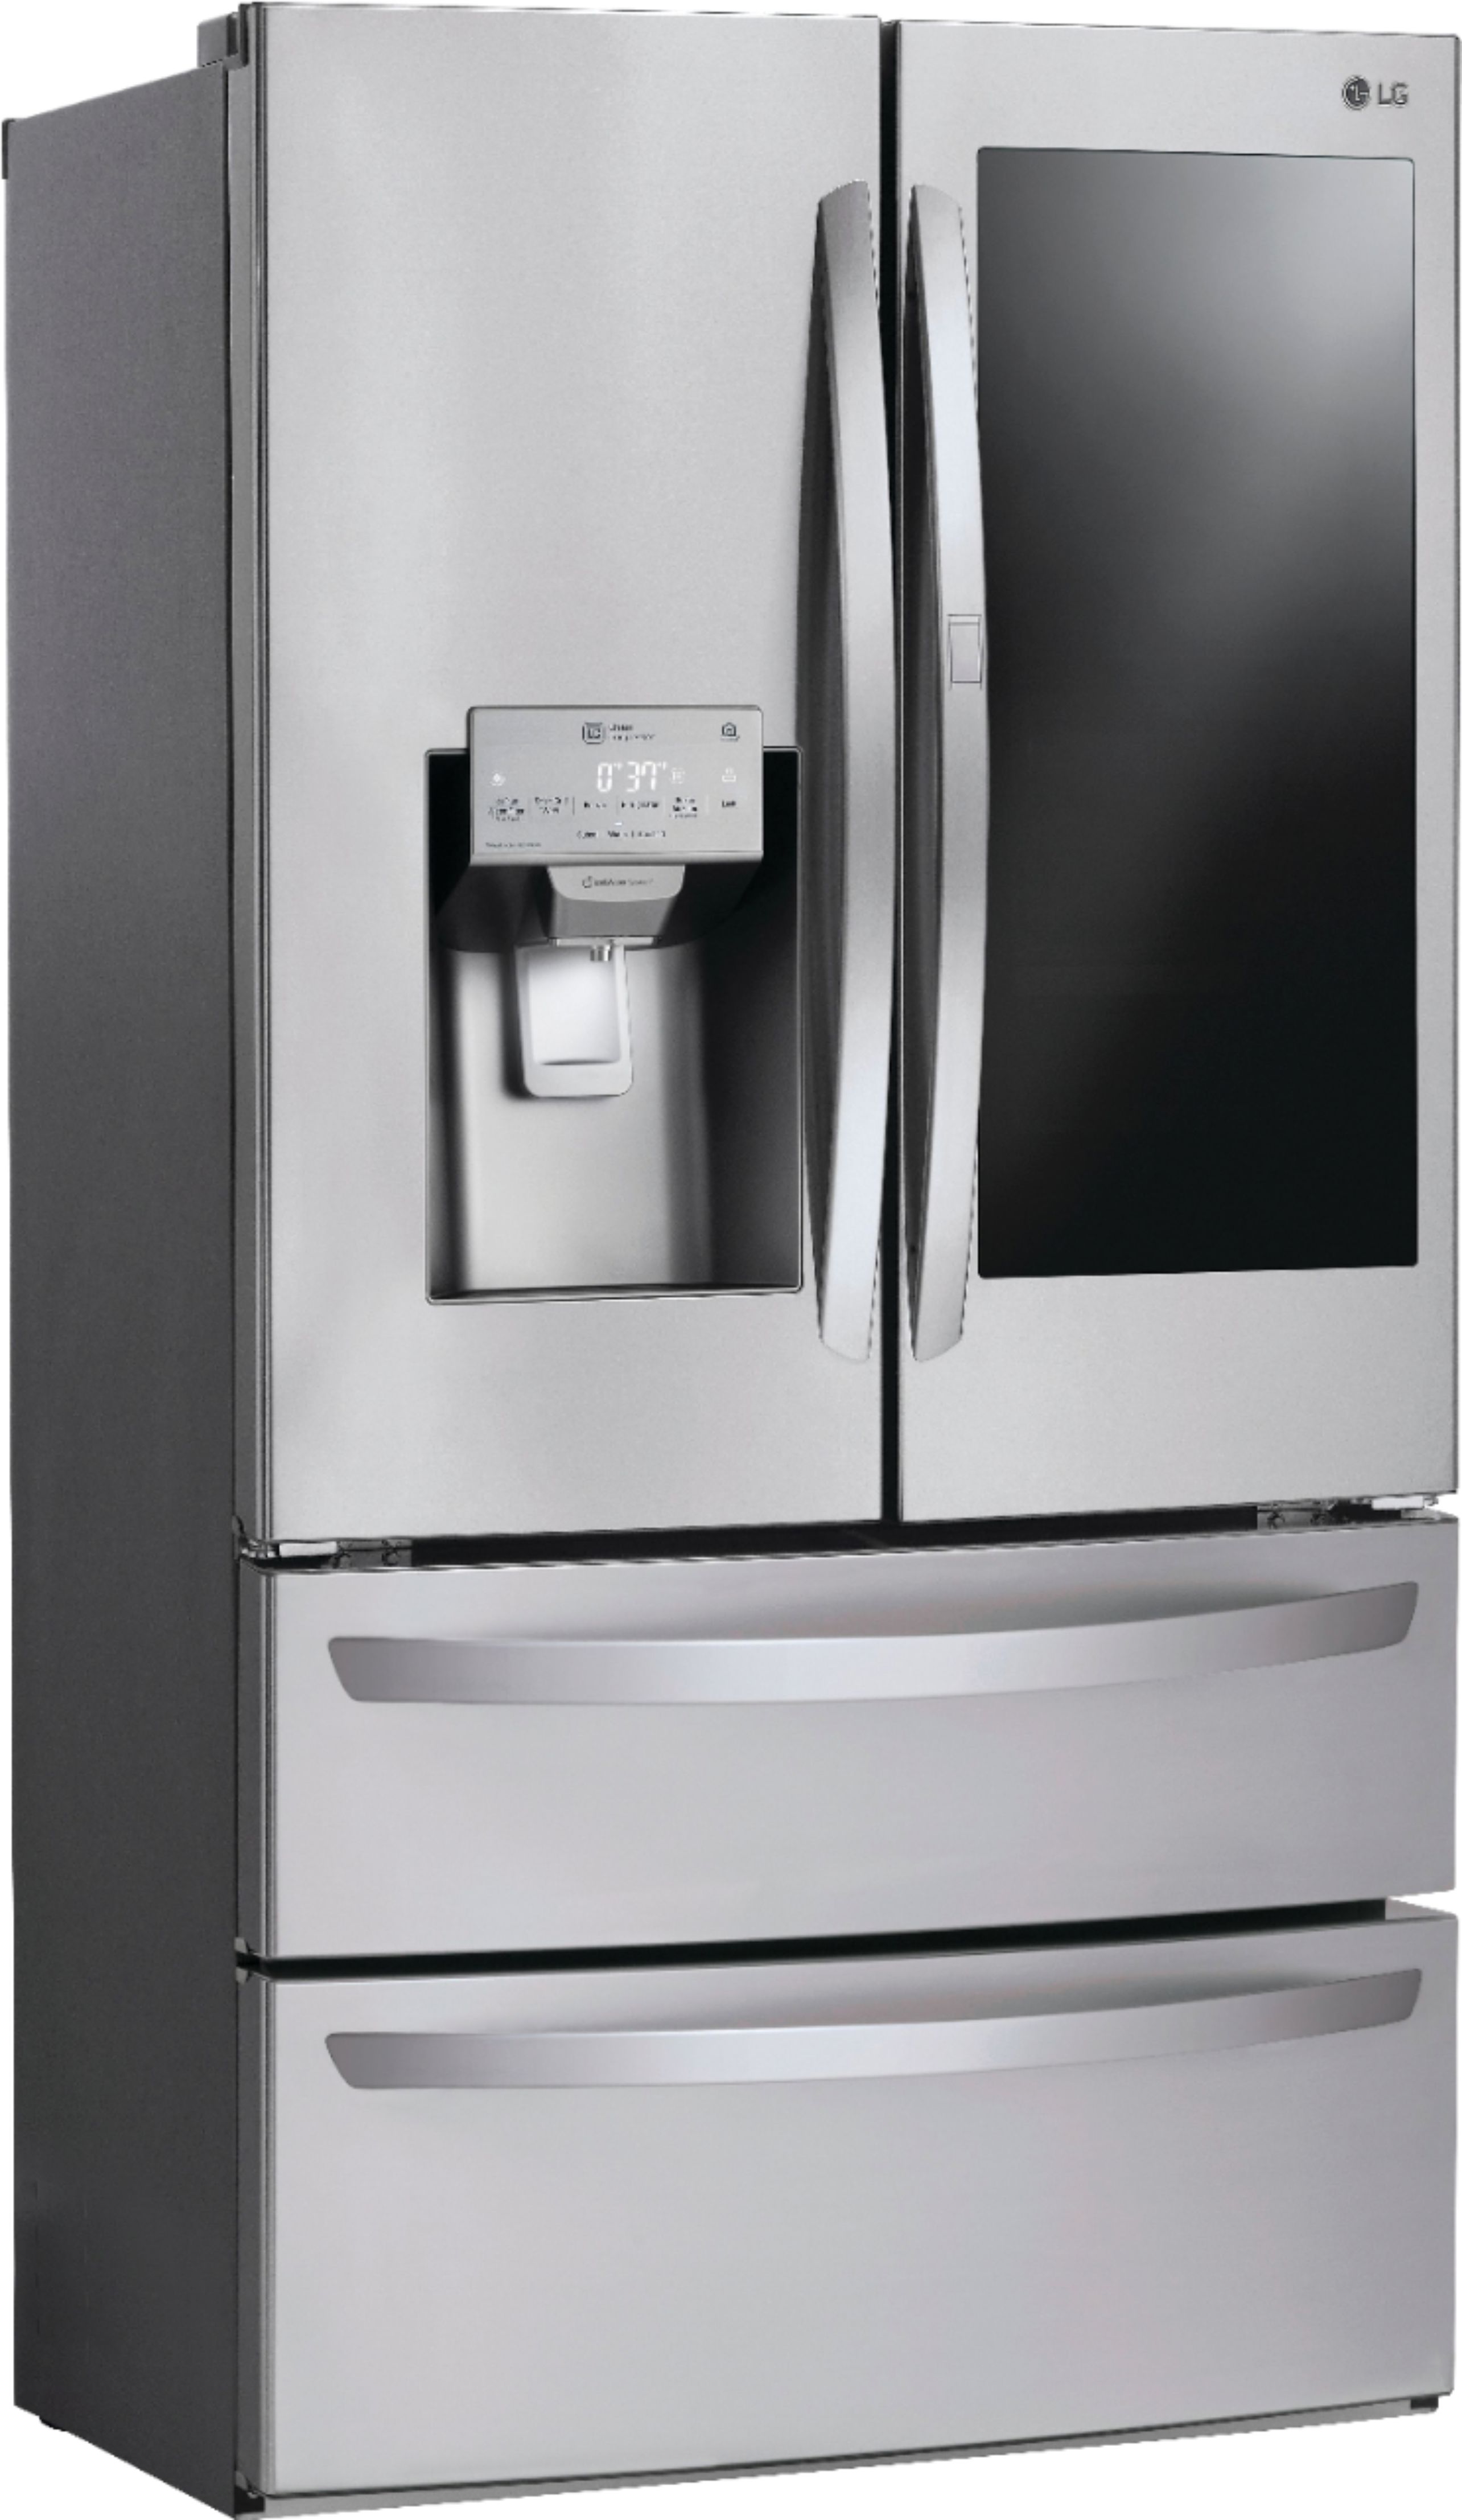 LG InstaView DoorinDoor 27.8 Cu. Ft. 4Door French Door Refrigerator Stainless steel